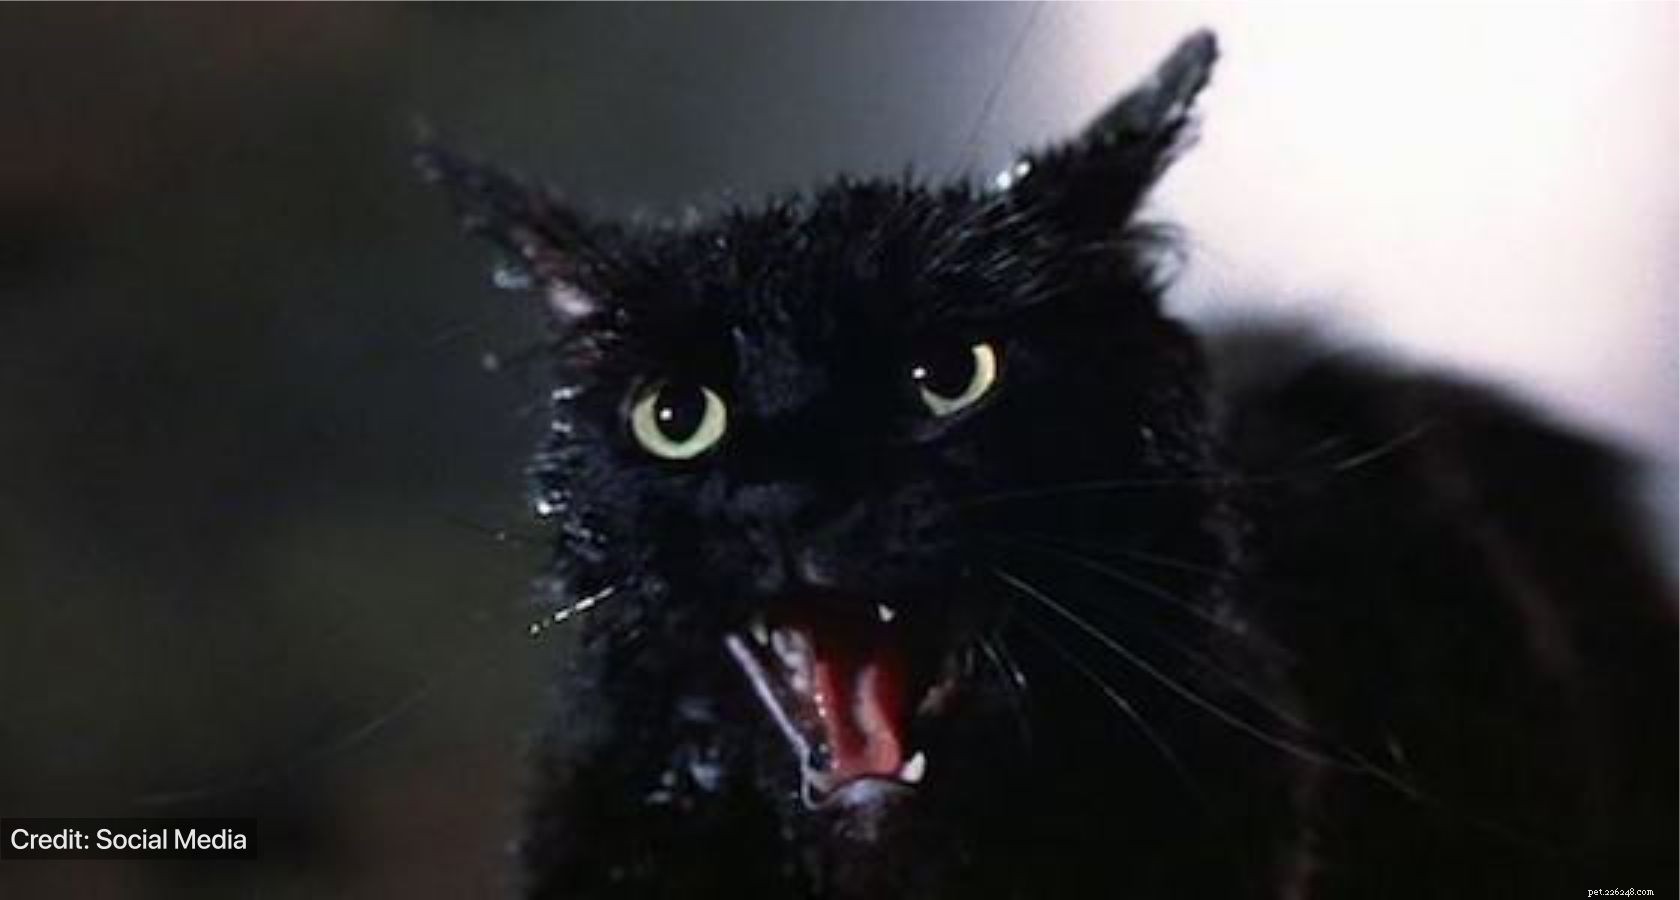 Pověry:Černé kočky považovány za smůlu nebo štěstí